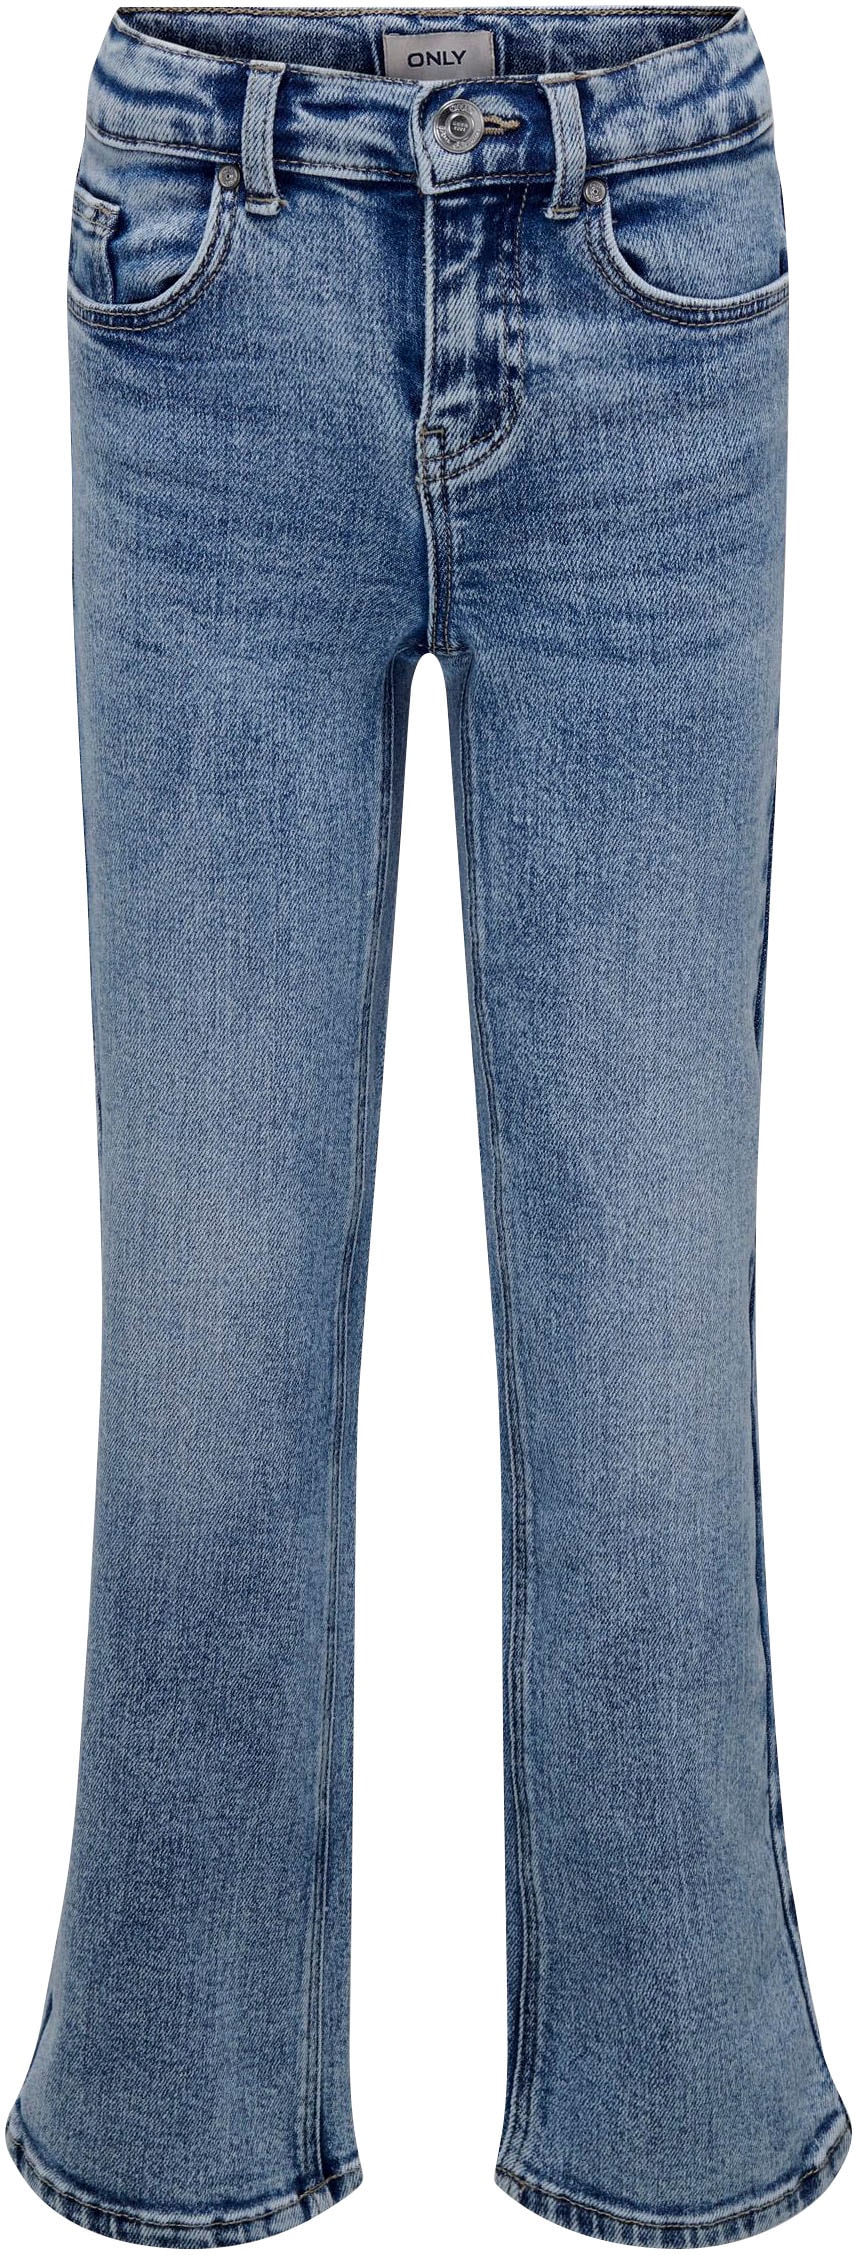 Trendige KIDS LEG 5-Pocket-Jeans »KOGJUICY bestellen DEST WIDE ONLY DN« versandkostenfrei